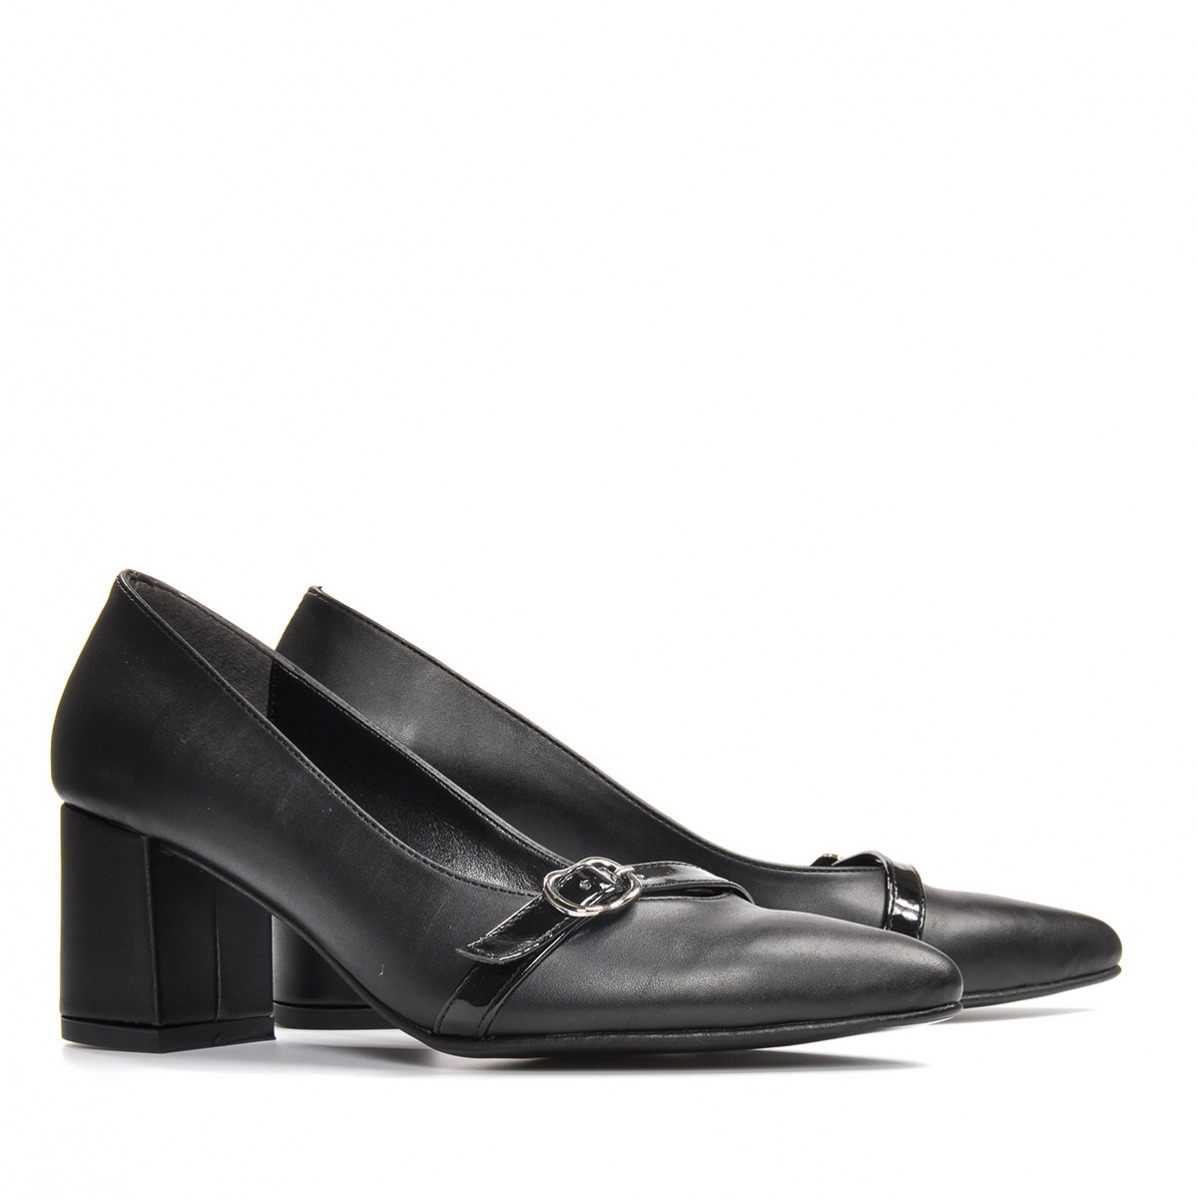 Flo Kadın  Siyah-Cilt Klasik Topuklu Ayakkabı VZN19-110K. 5